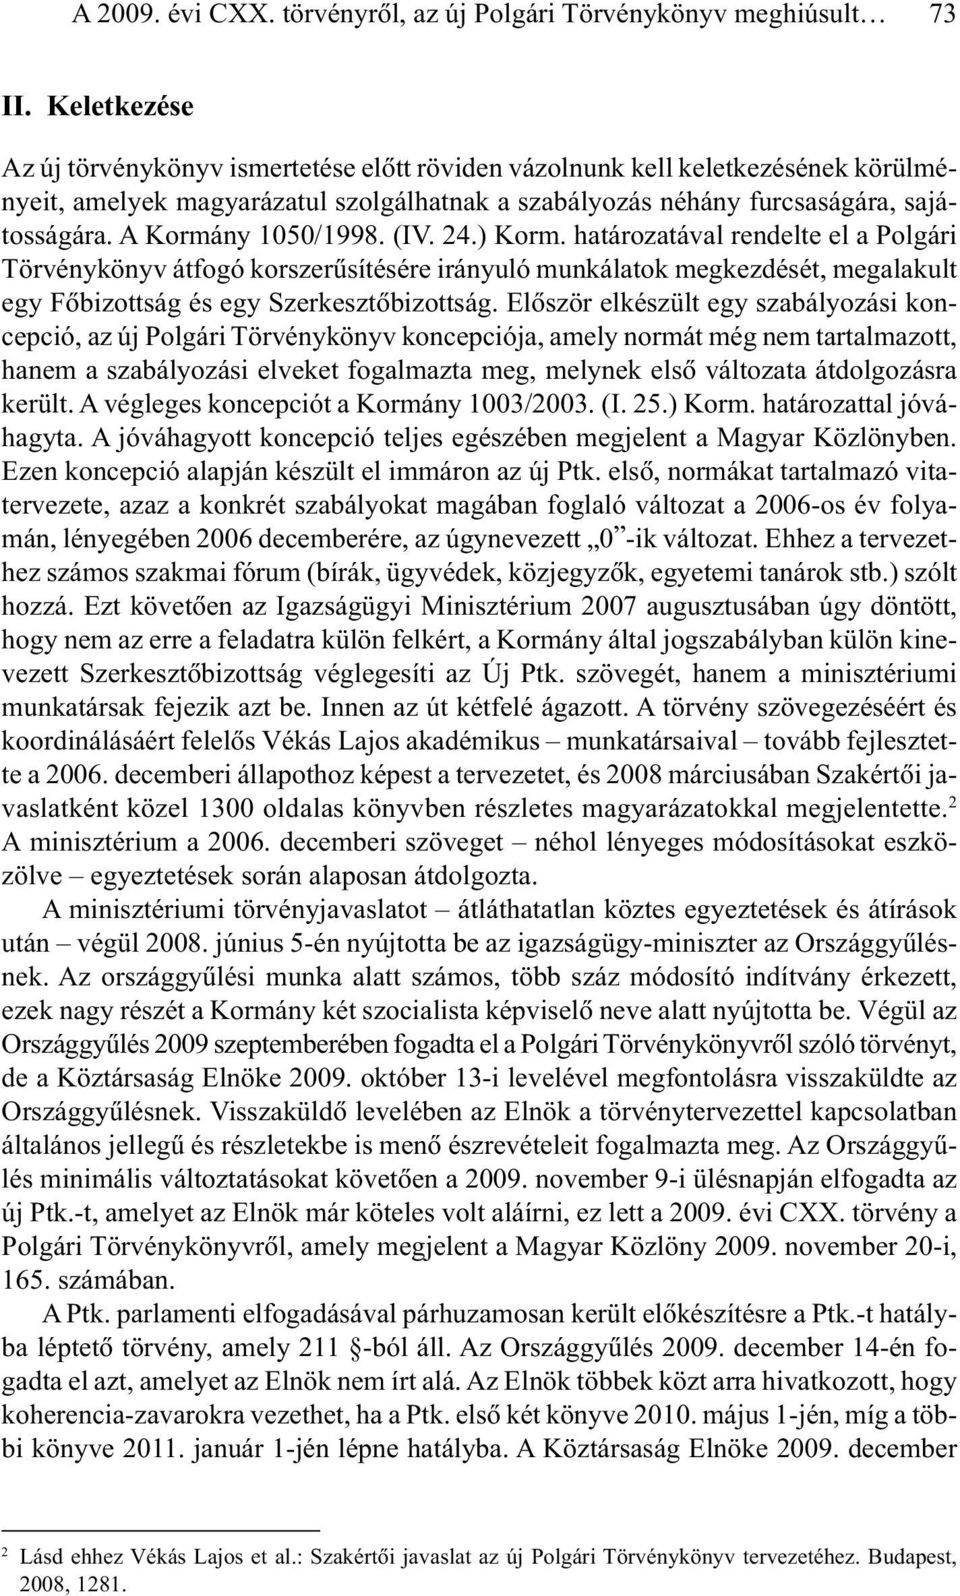 A Kormány 1050/1998. (IV. 24.) Korm. határozatával rendelte el a Polgári Törvénykönyv átfogó korszerûsítésére irányuló munkálatok megkezdését, megalakult egy Fõbizottság és egy Szerkesztõbizottság.